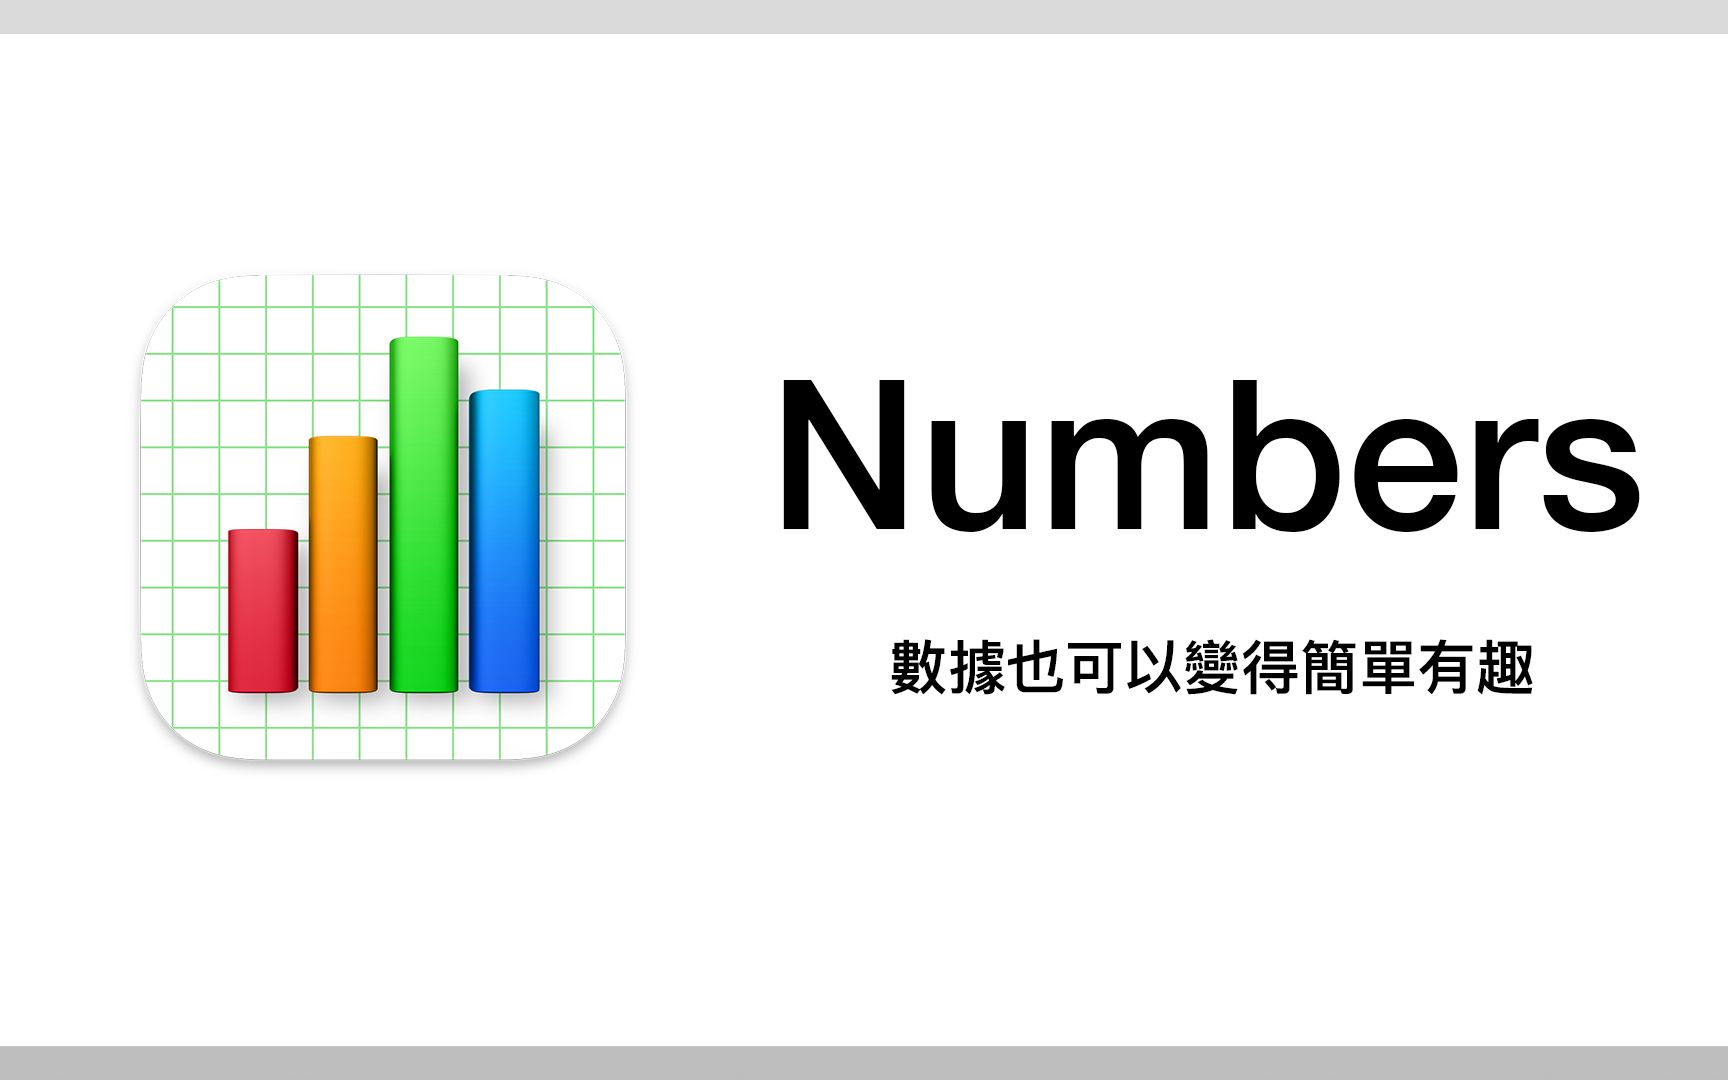 想法？对于：当 Excel 交给苹果来设计会变成…？#Numbers 新手教学[1次更新]的第1张示图